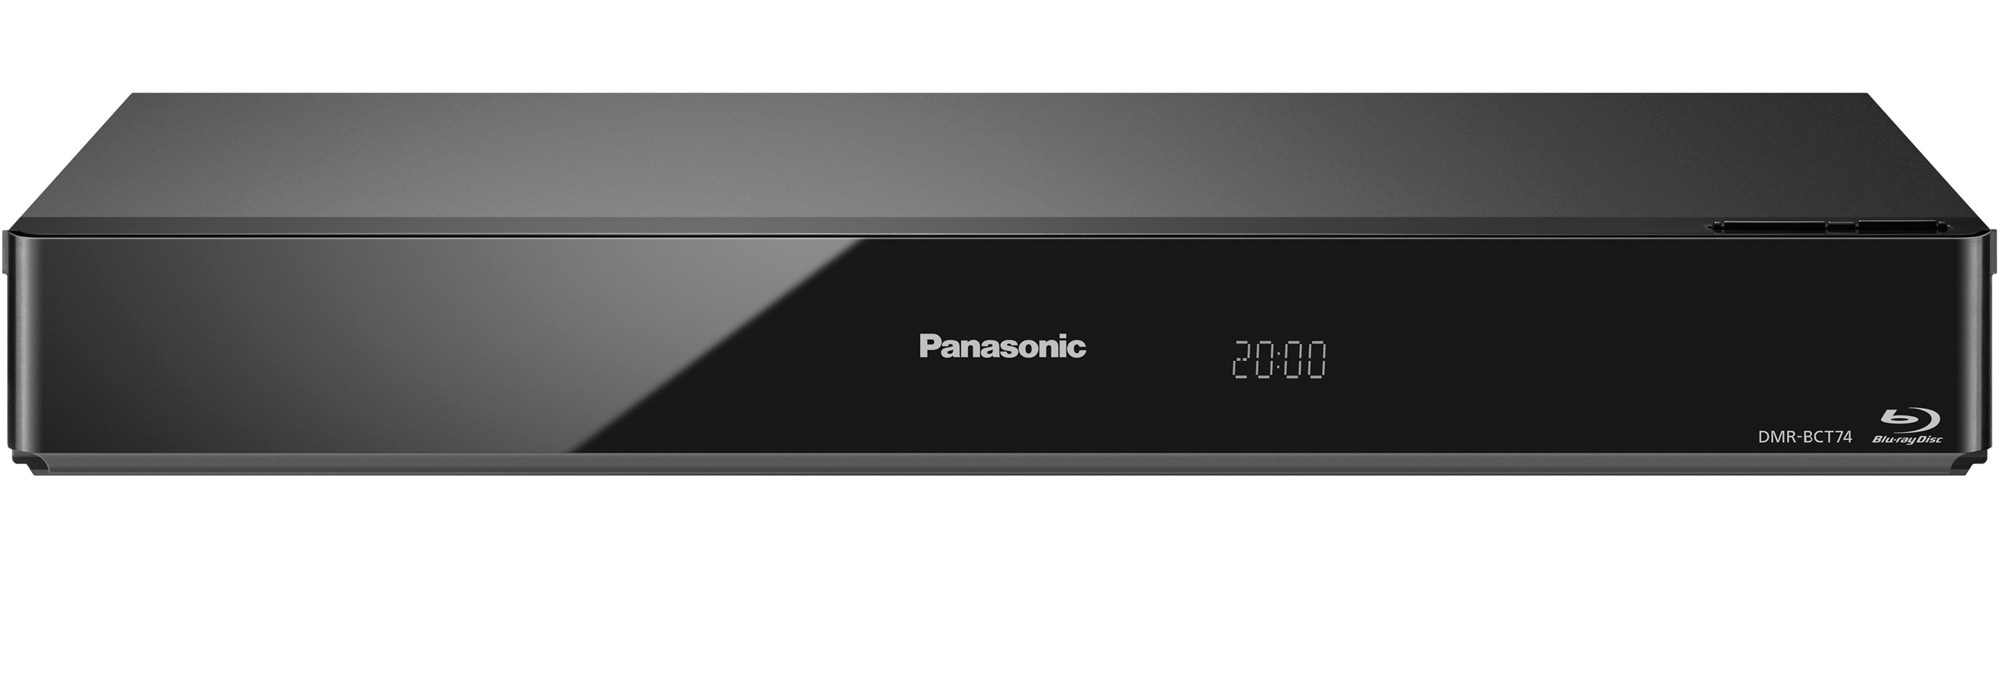 Panasonic 3D Smart Blu-ray optager 500 GB DMR-BCT74ENK | Elgiganten